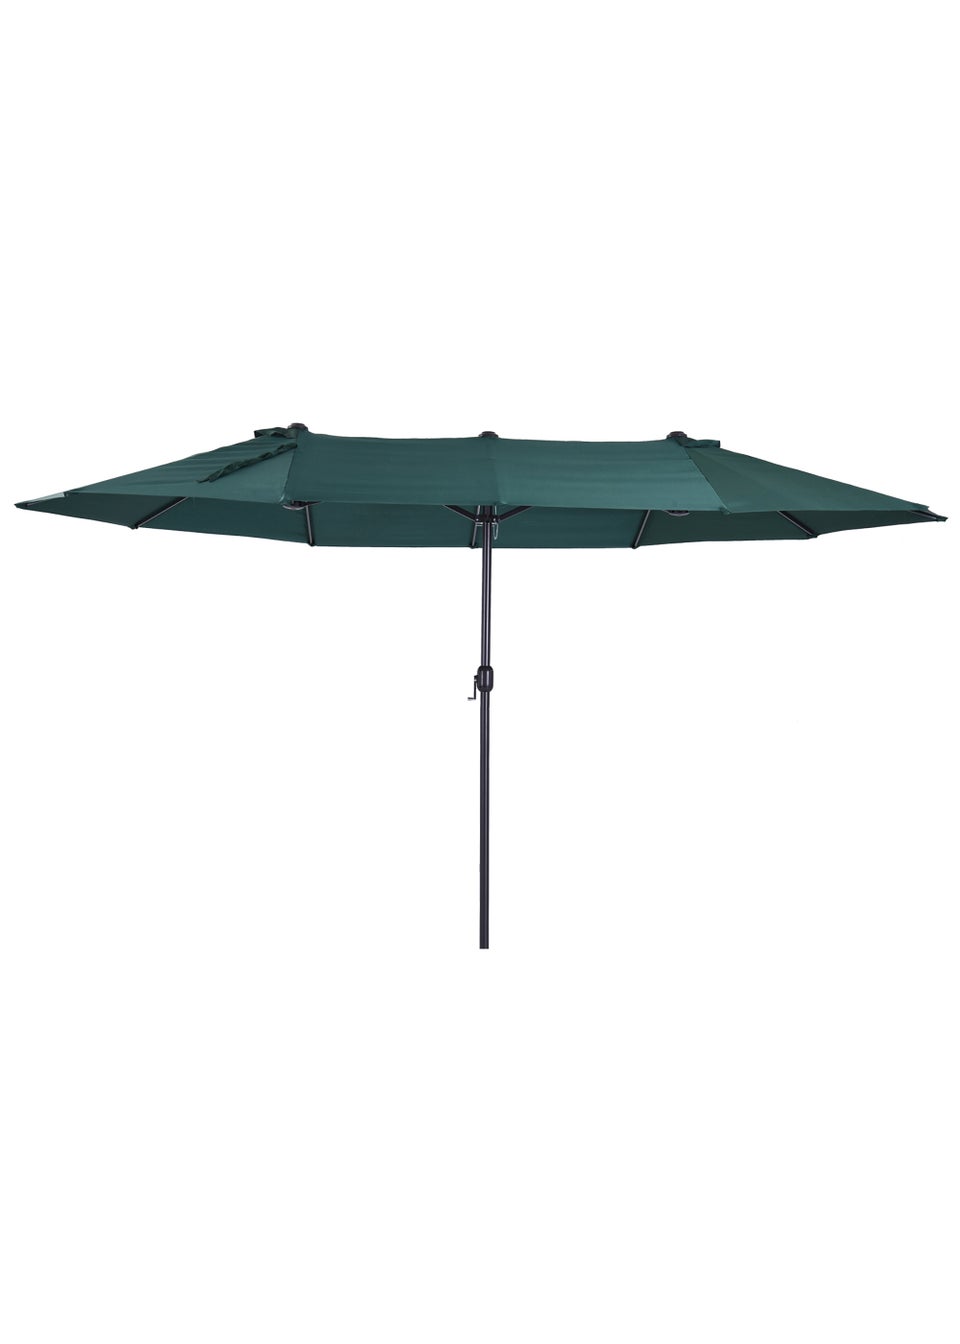 Outsunny Green Double Canopy Sun Umbrella (4.6m)